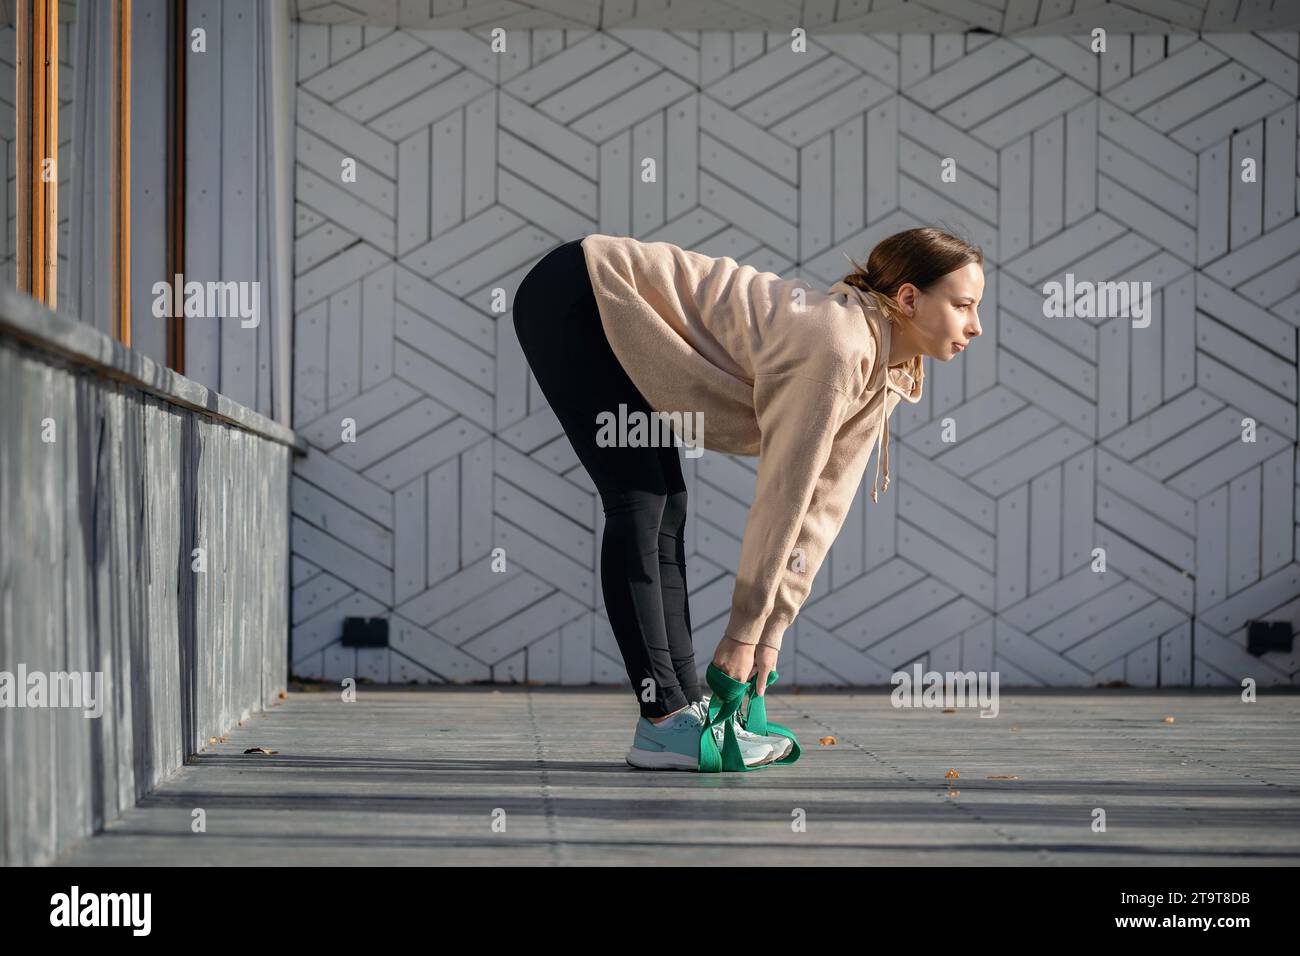 Una giovane atleta esegue esercizi di stretching per i muscoli della schiena e delle gambe con una cintura fitness, allenandosi con abbigliamento sportivo mentre si sta in piedi su una p di legno Foto Stock